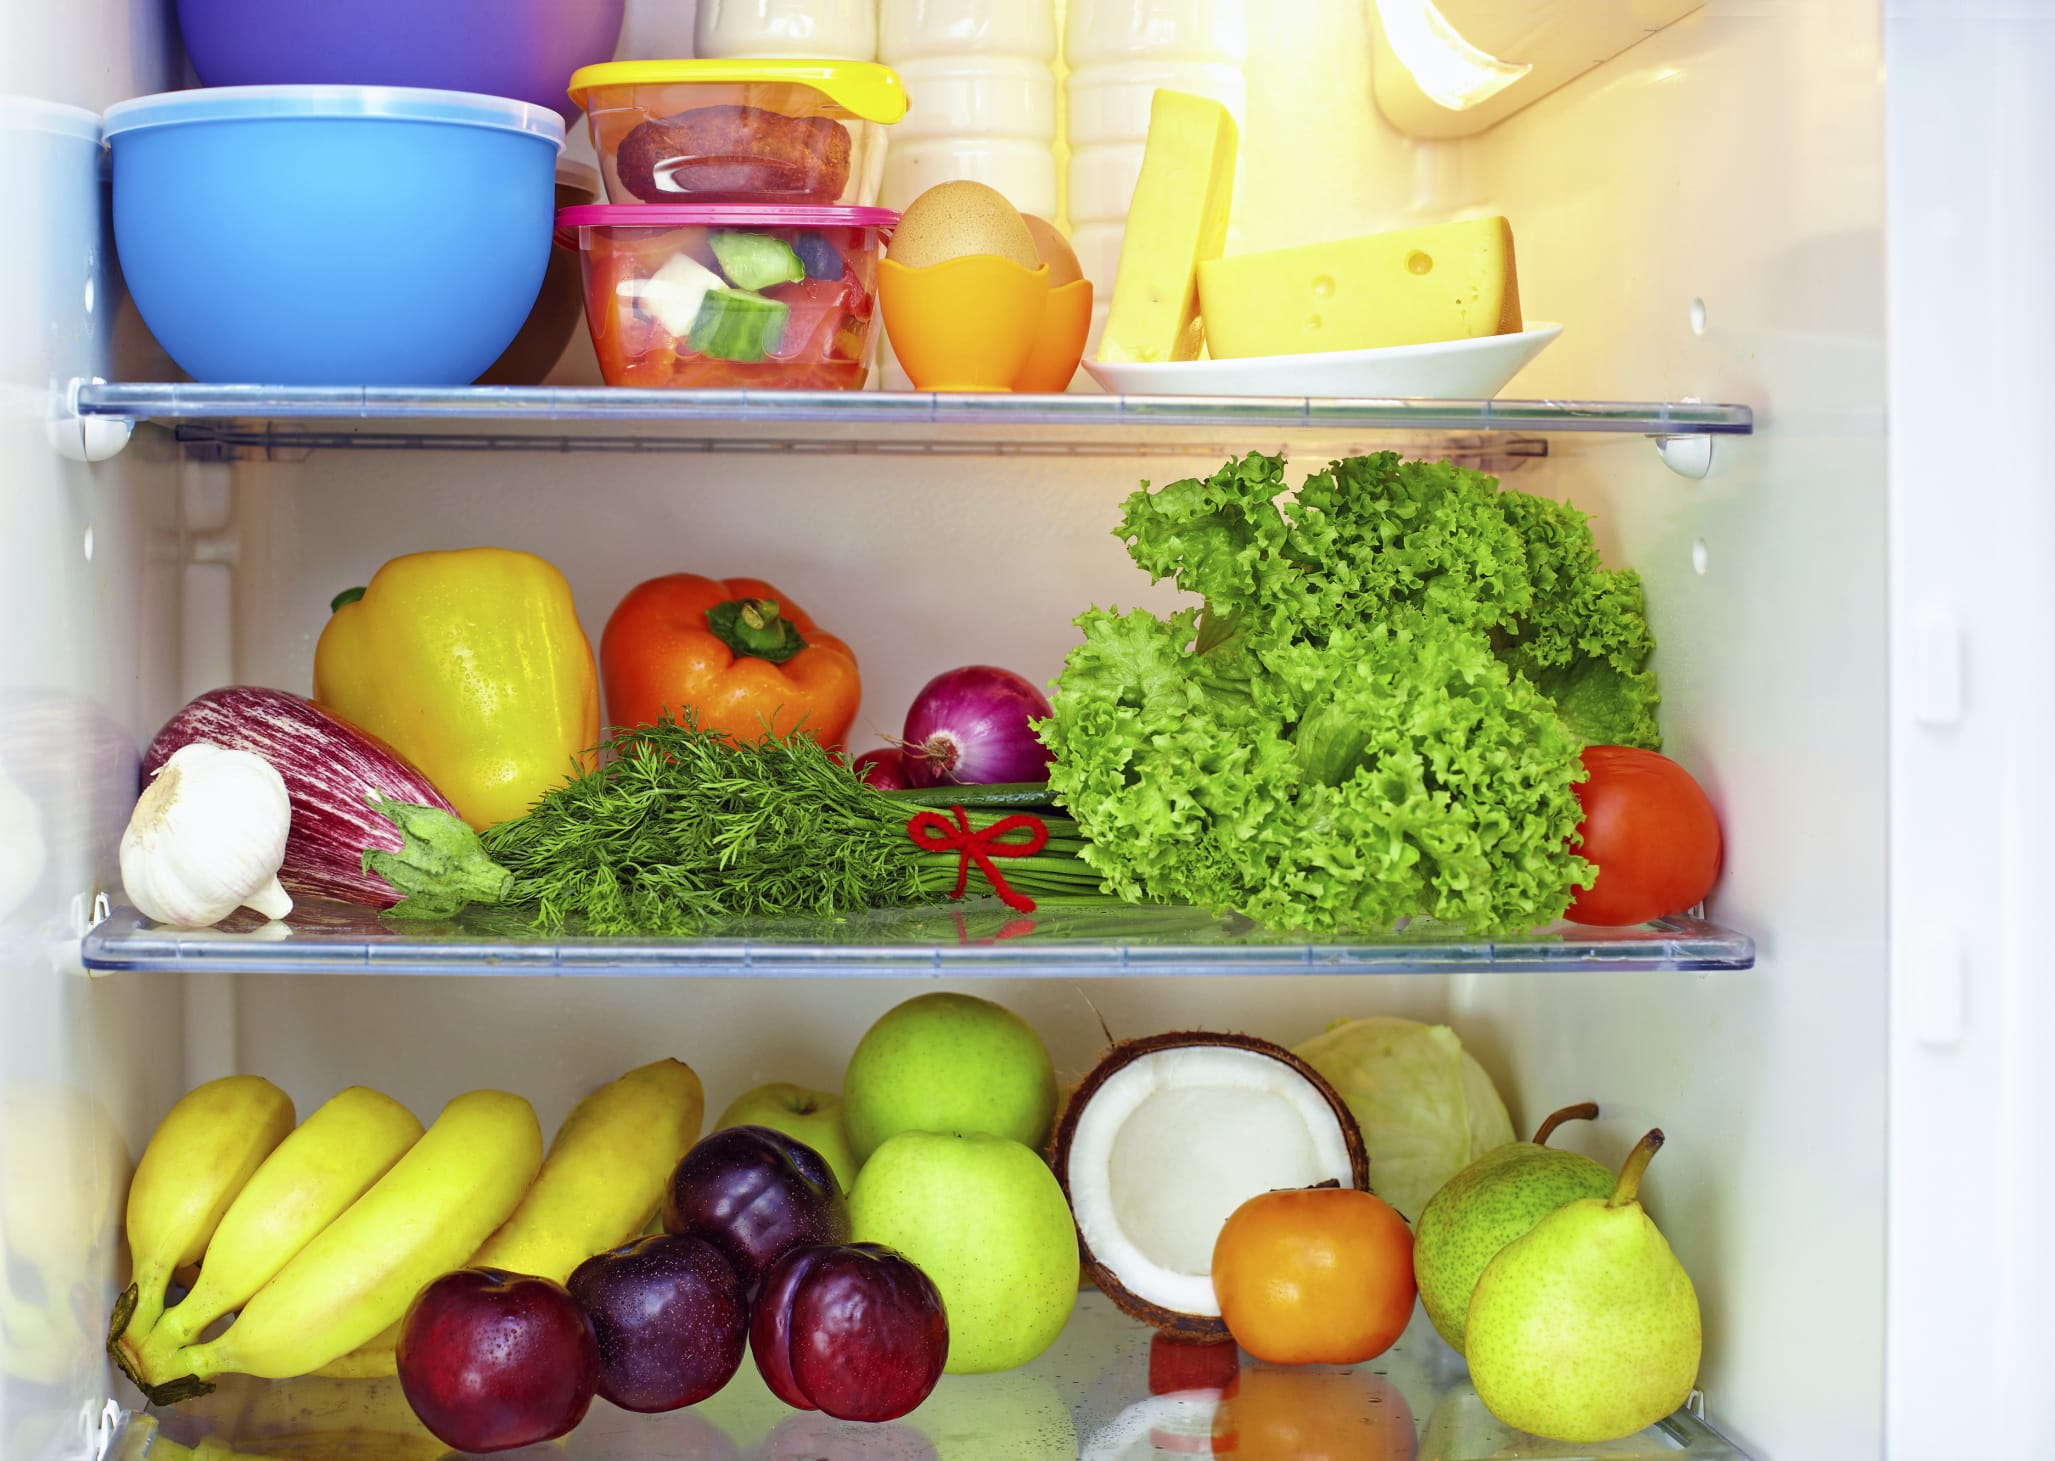 Conservare cibi piccanti nel frigorifero